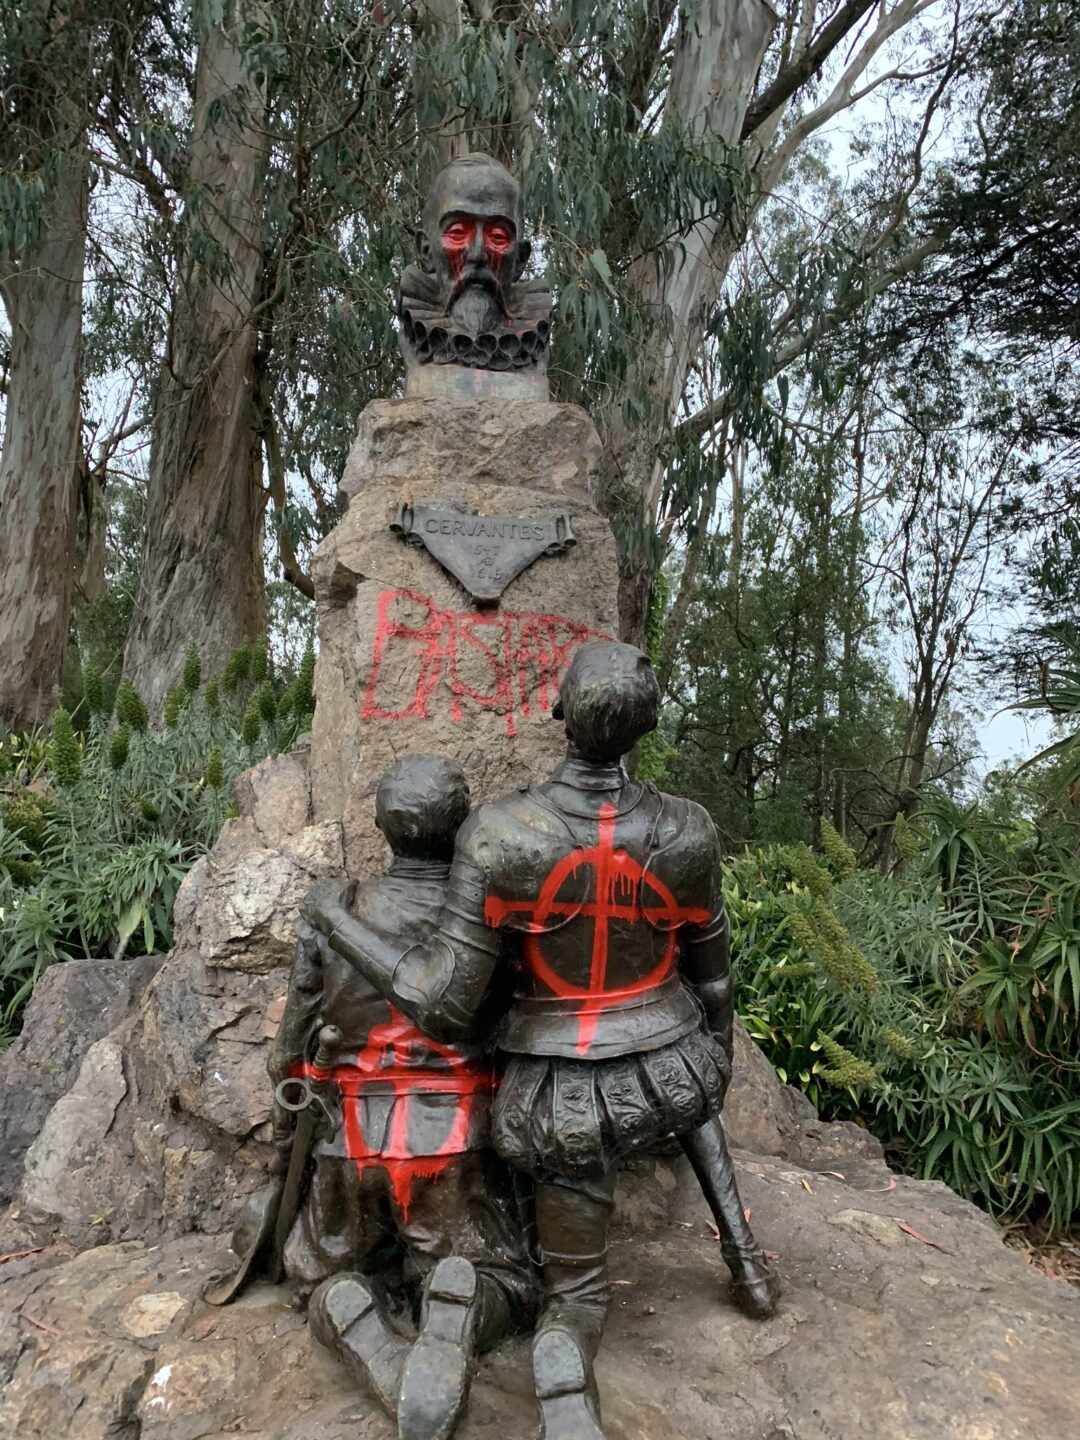 Escriben "bastardo" y pintan de rojo sangre en la estatua de Cervantes en un parque de San Francisco